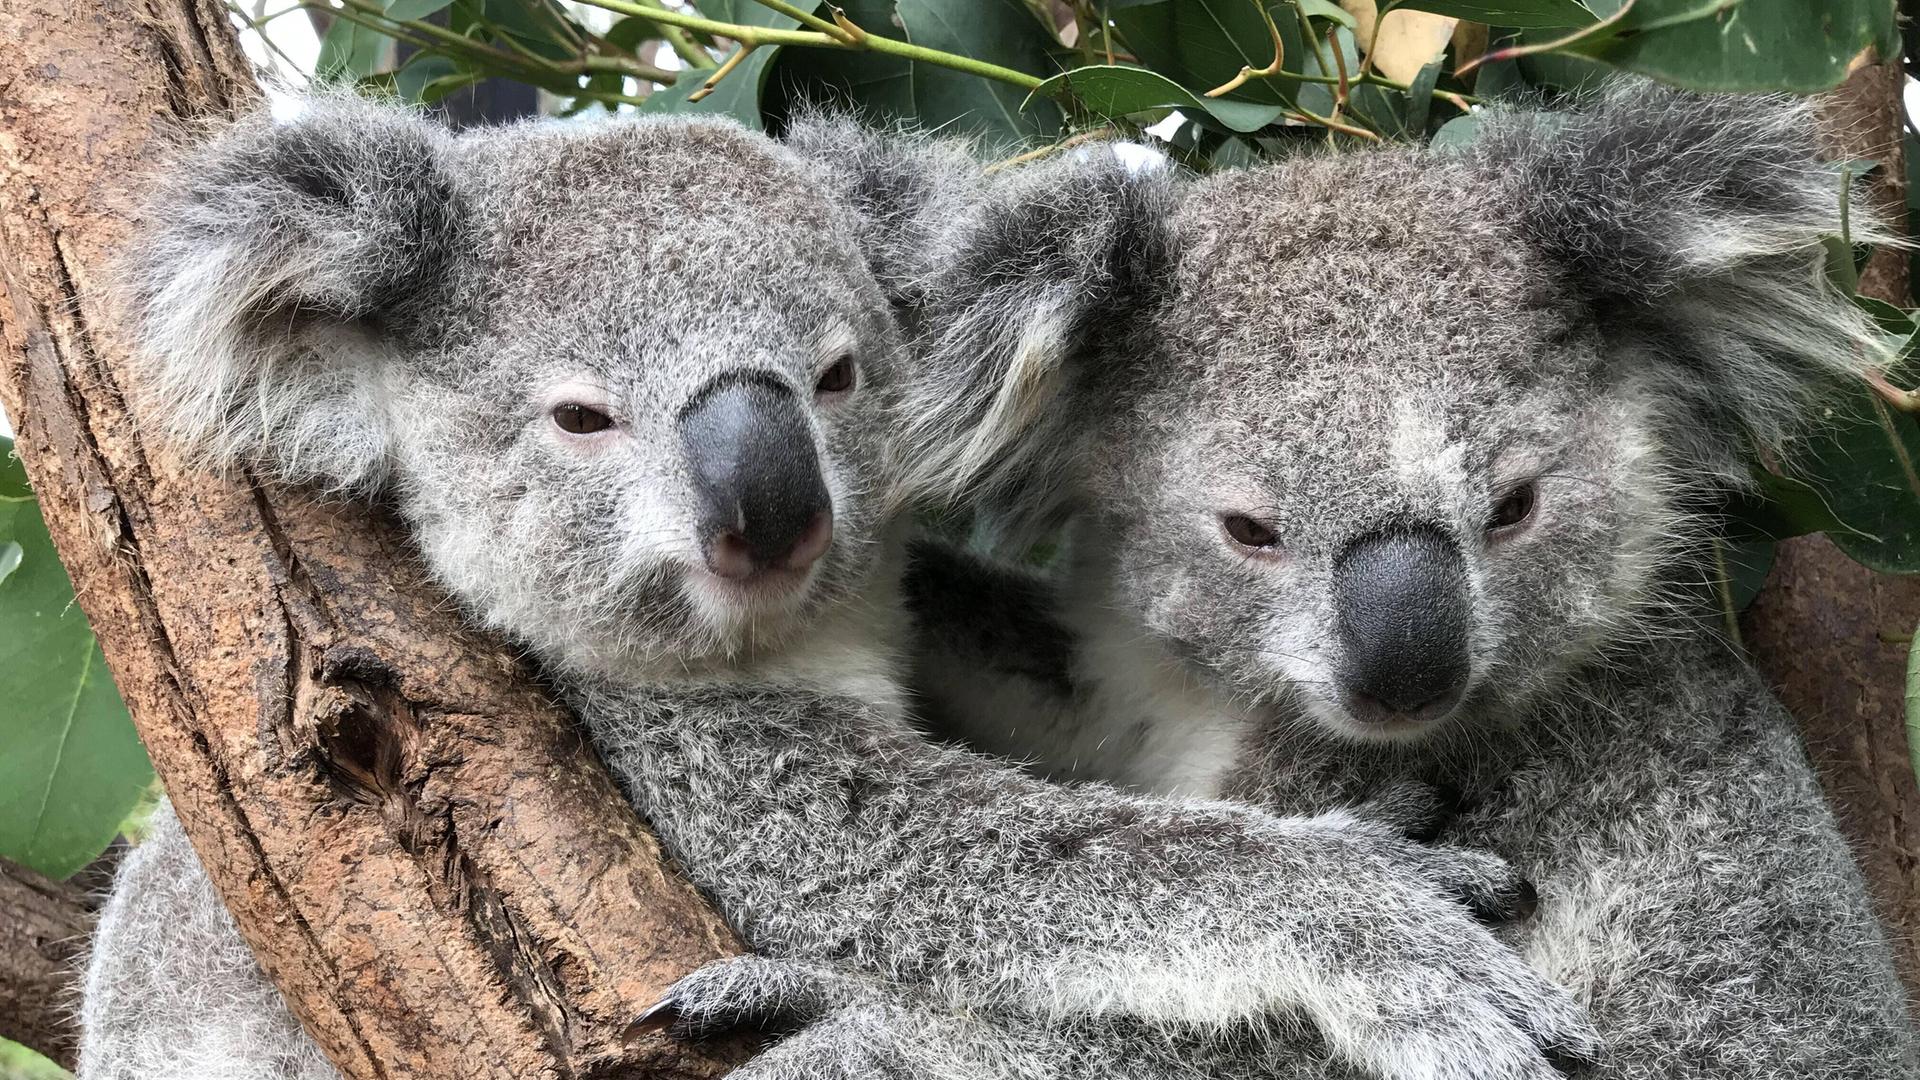 Zwei graue Koalas umarmen sich in einer Astgabel.